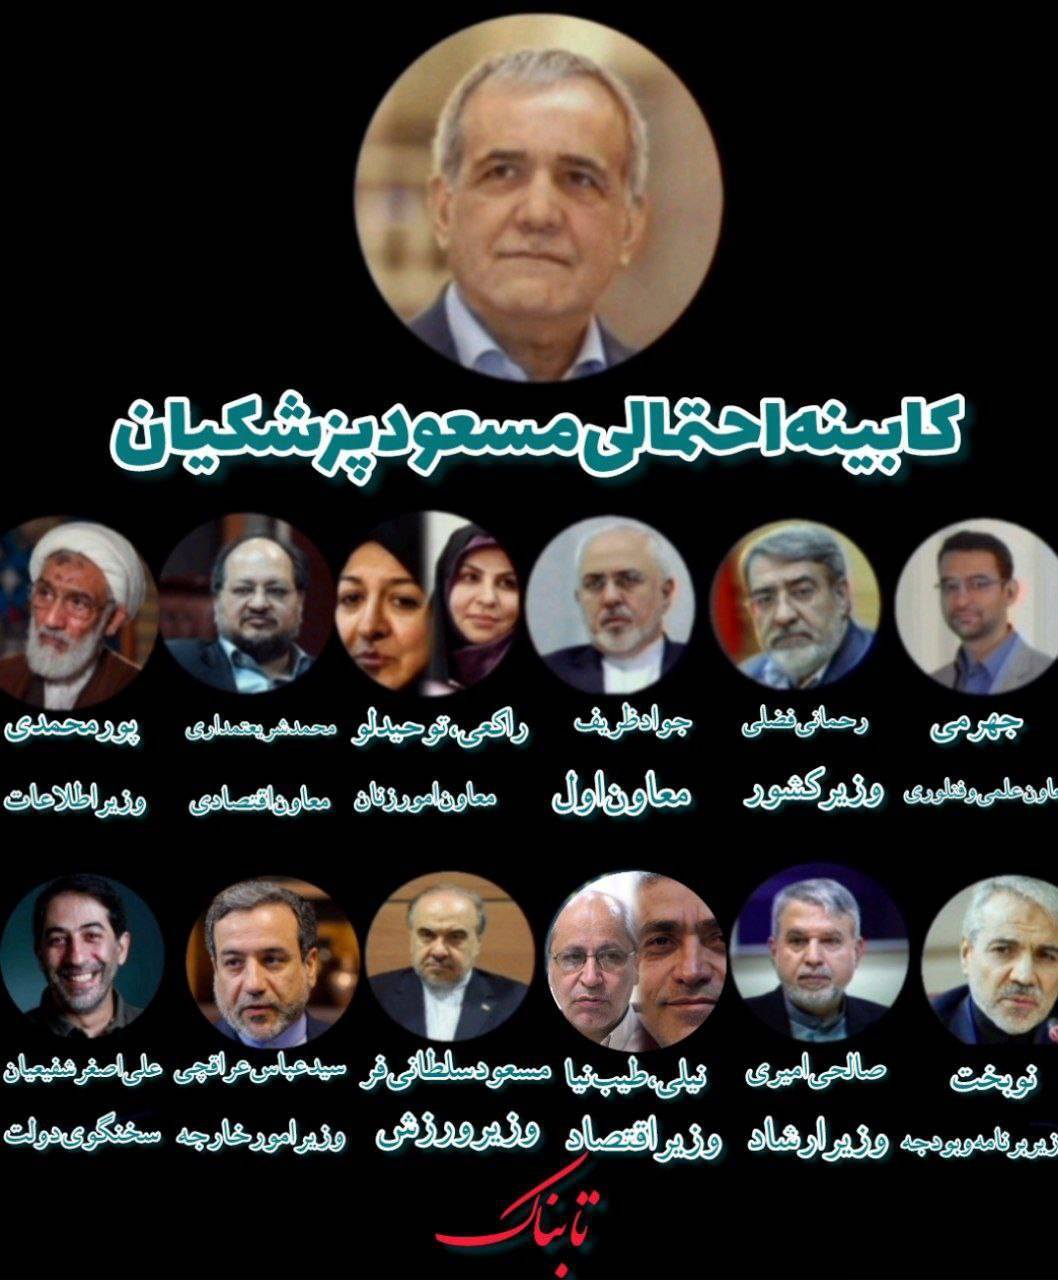 الكشف عن تركيبة حكومة بزشكيان إذا فاز برئاسة إيران